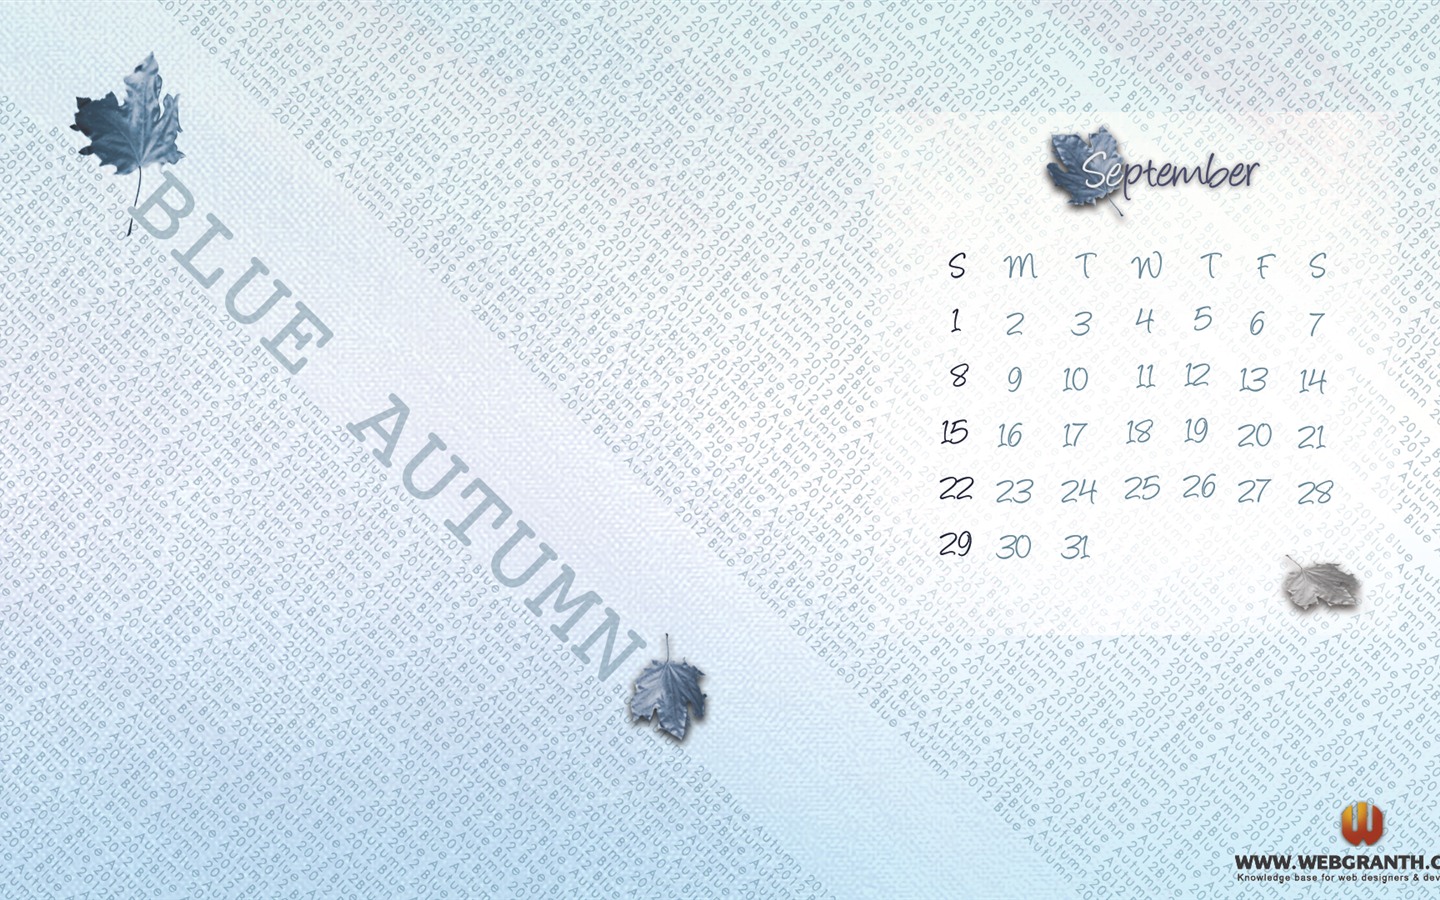 September 2012 Calendar wallpaper (1) #12 - 1440x900